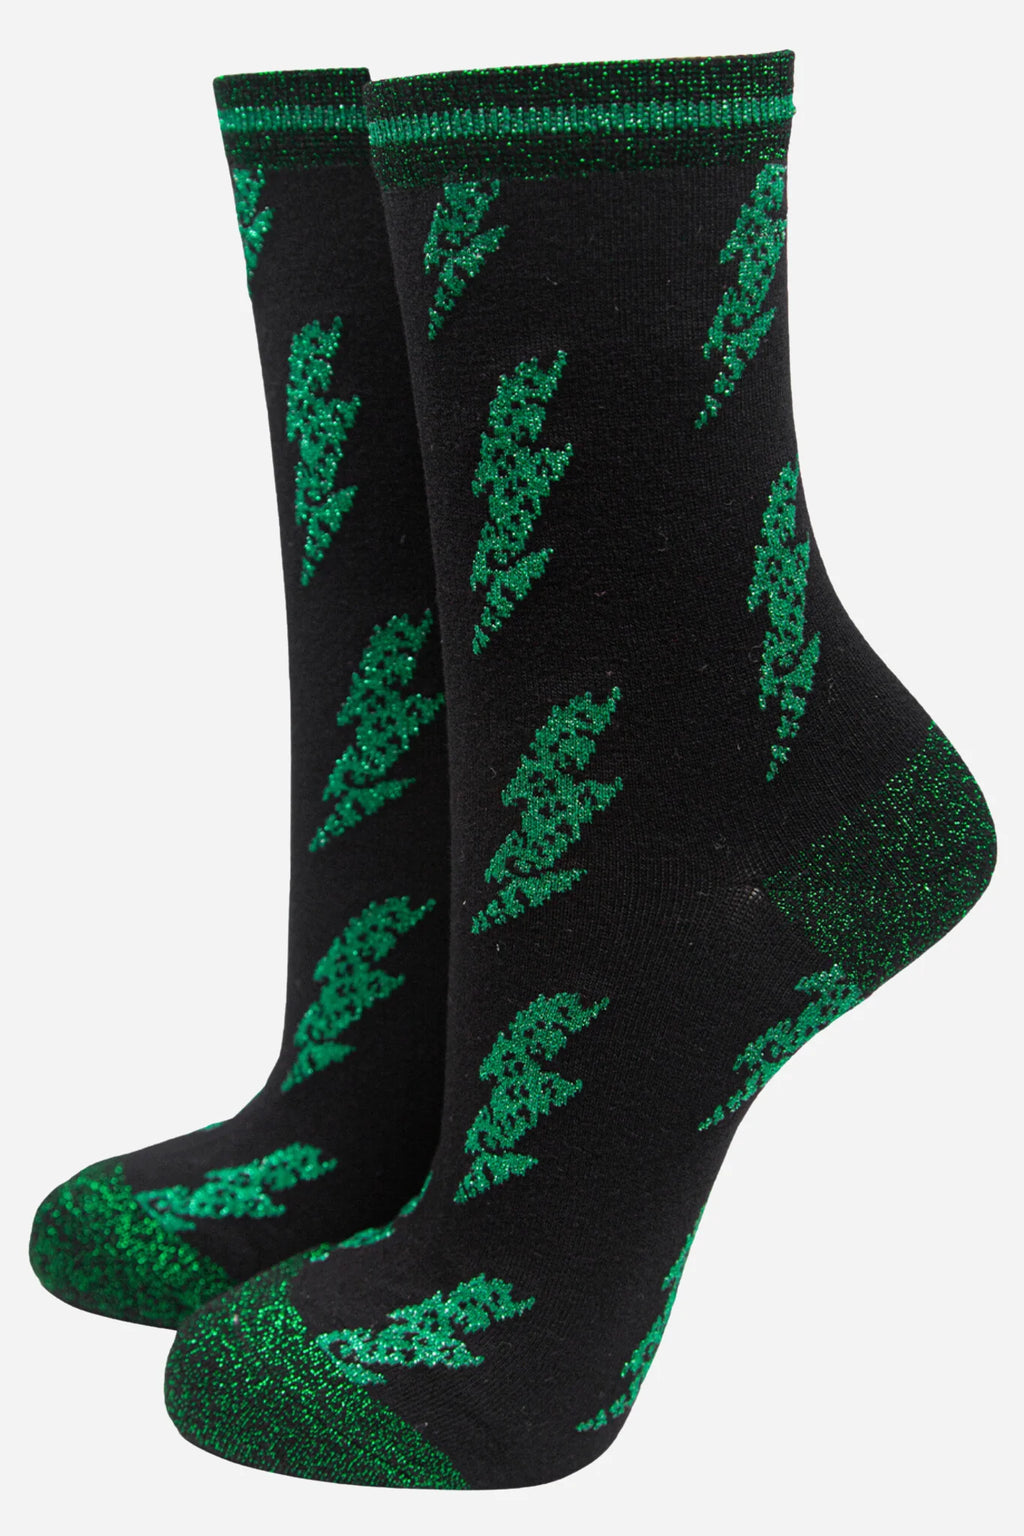 Green Glitter Lightning Bolt Socks